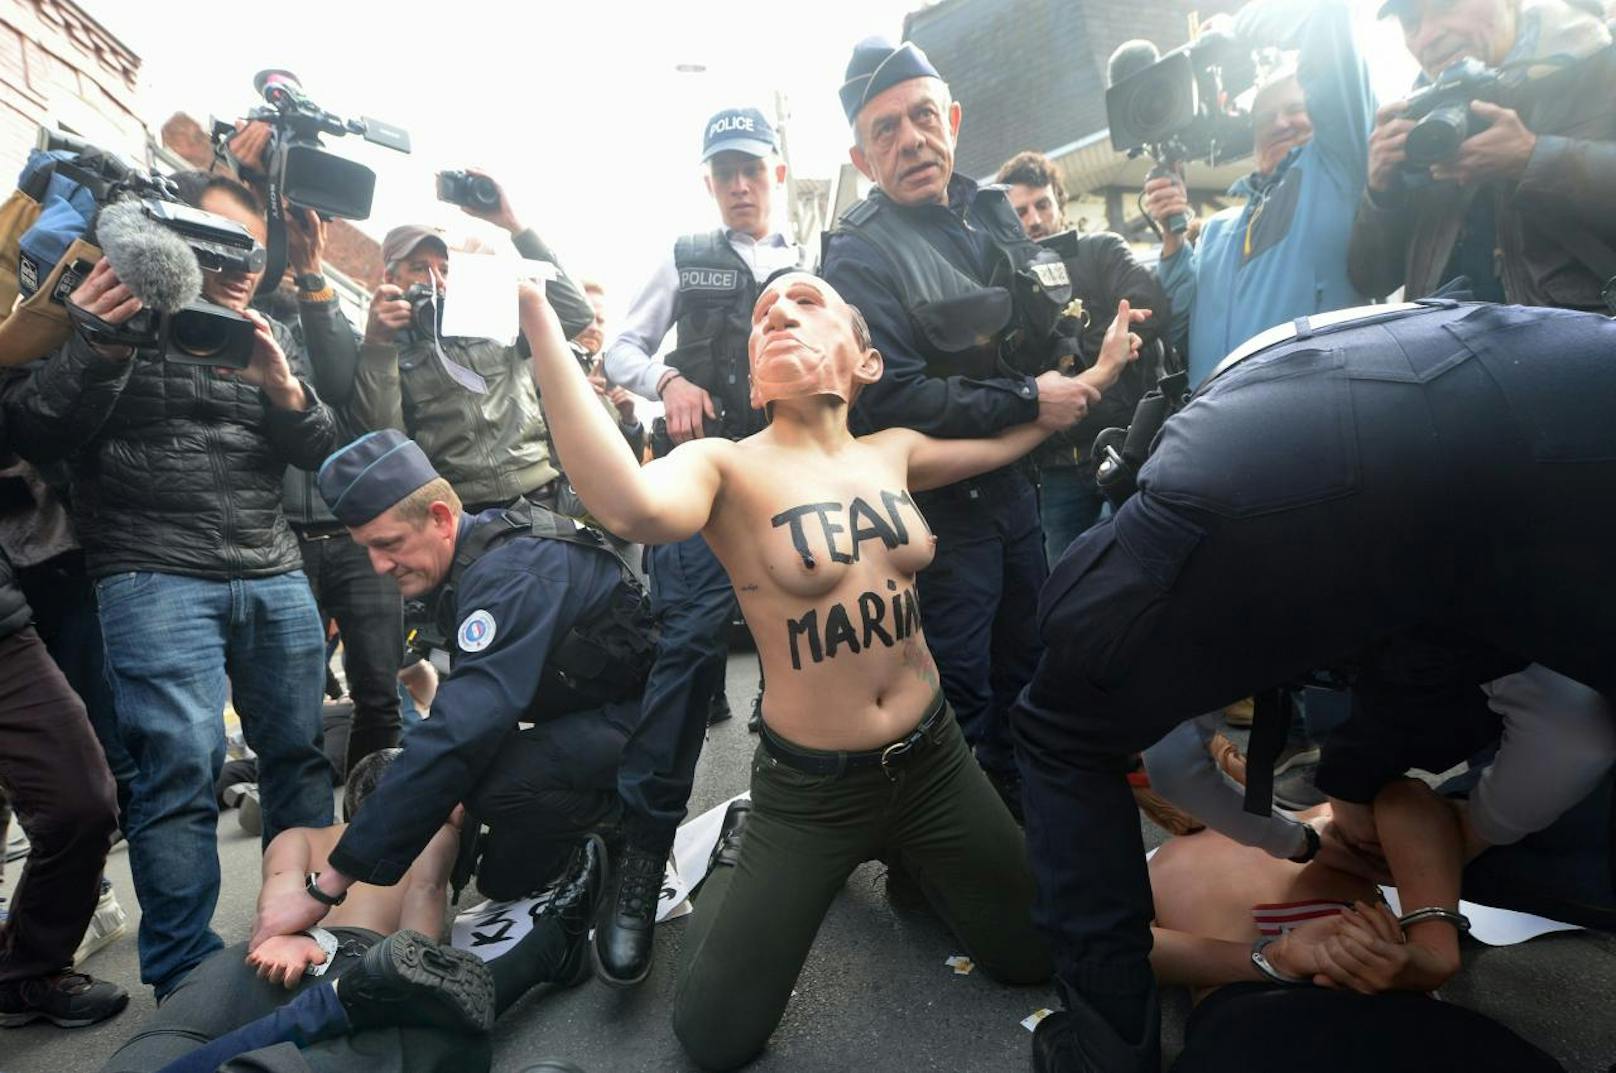 Nackt-Protest vor dem Wahllokal von Marine Le Pen